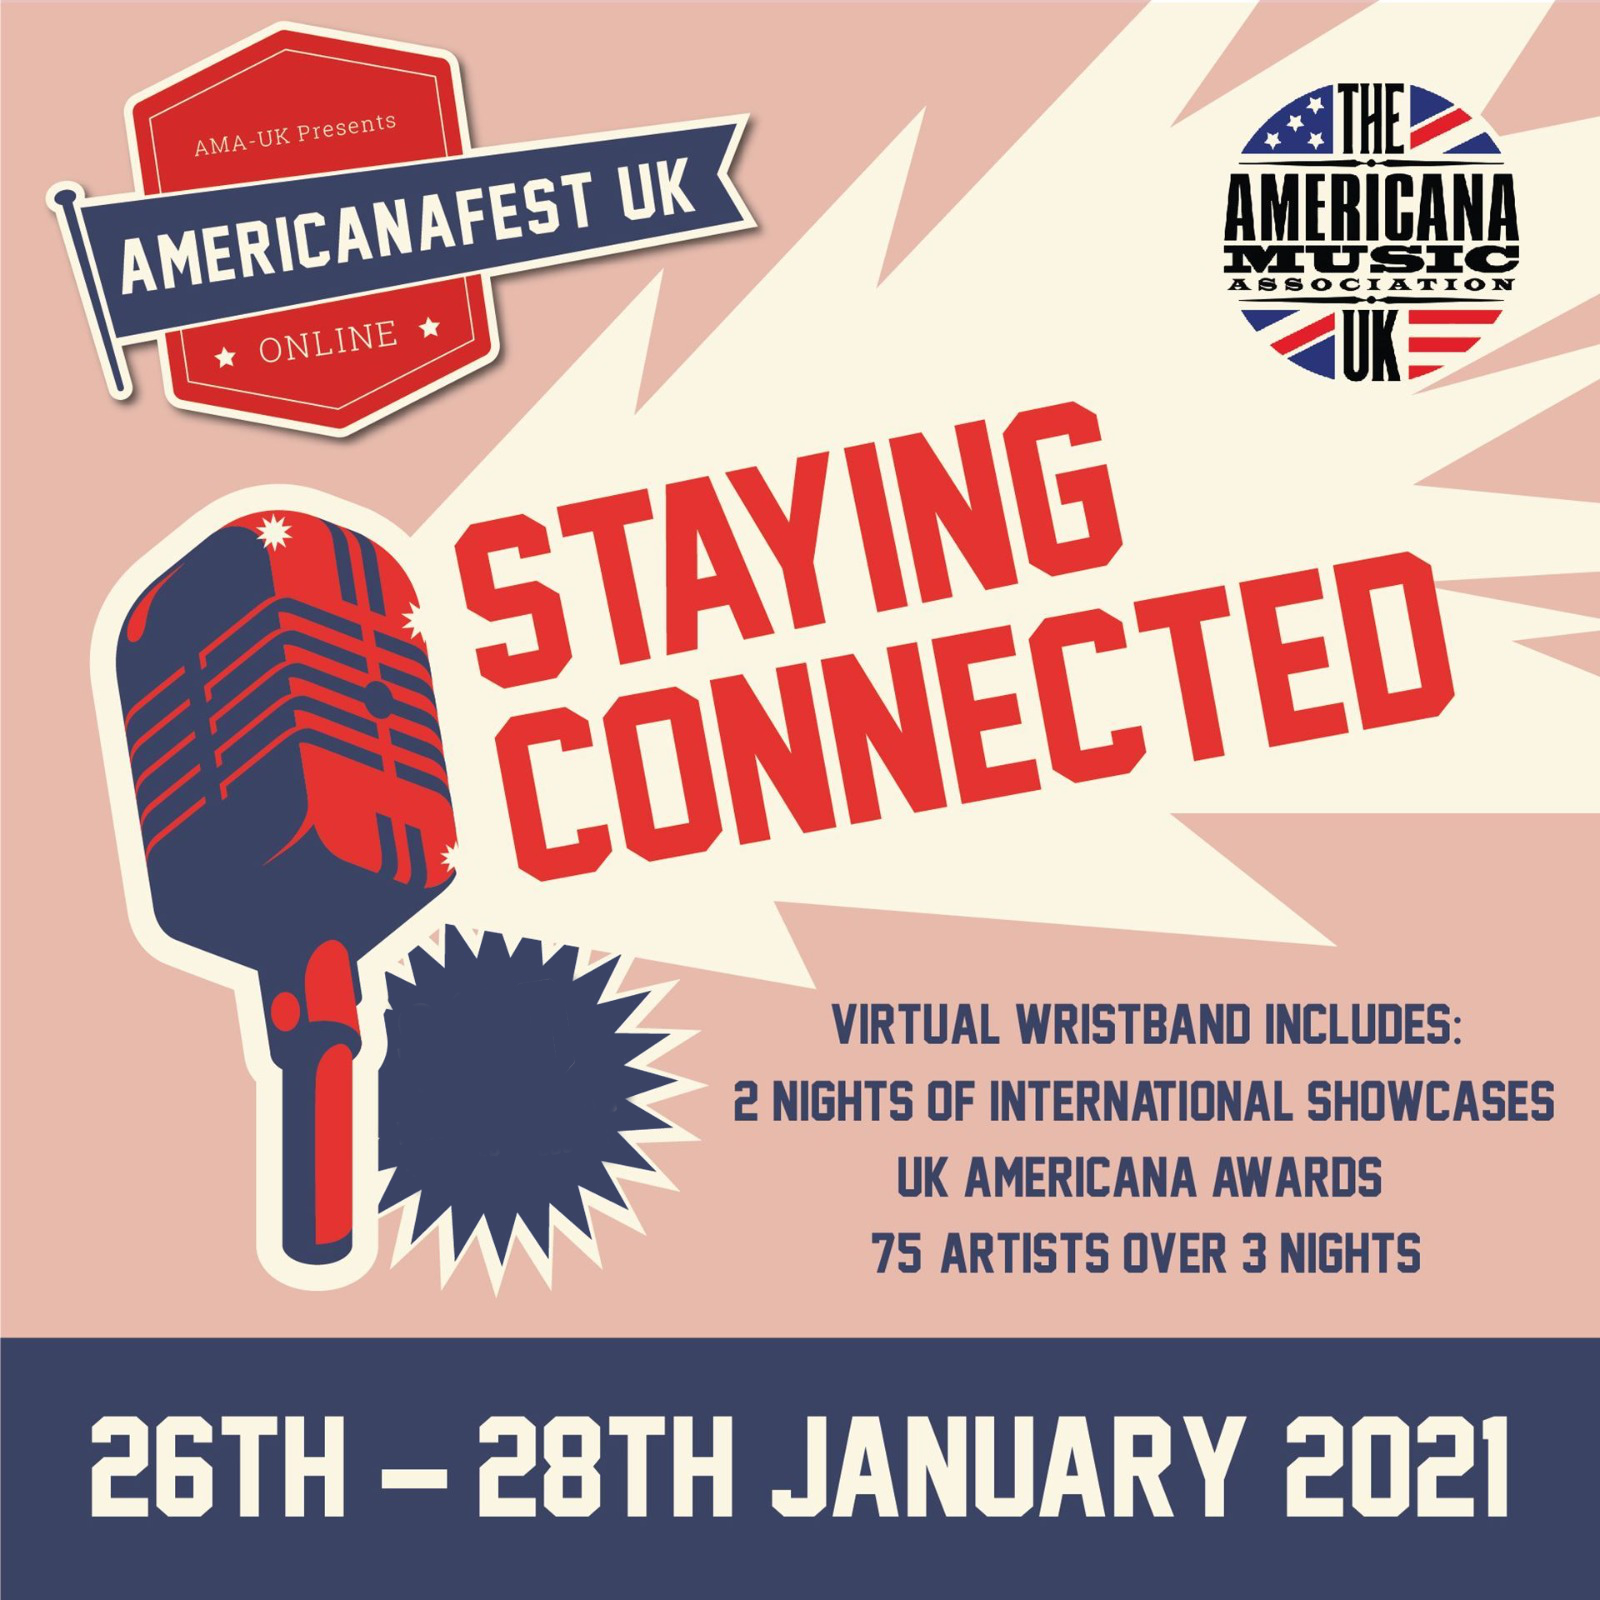 AmericanaFest UK happening ONLINE this week